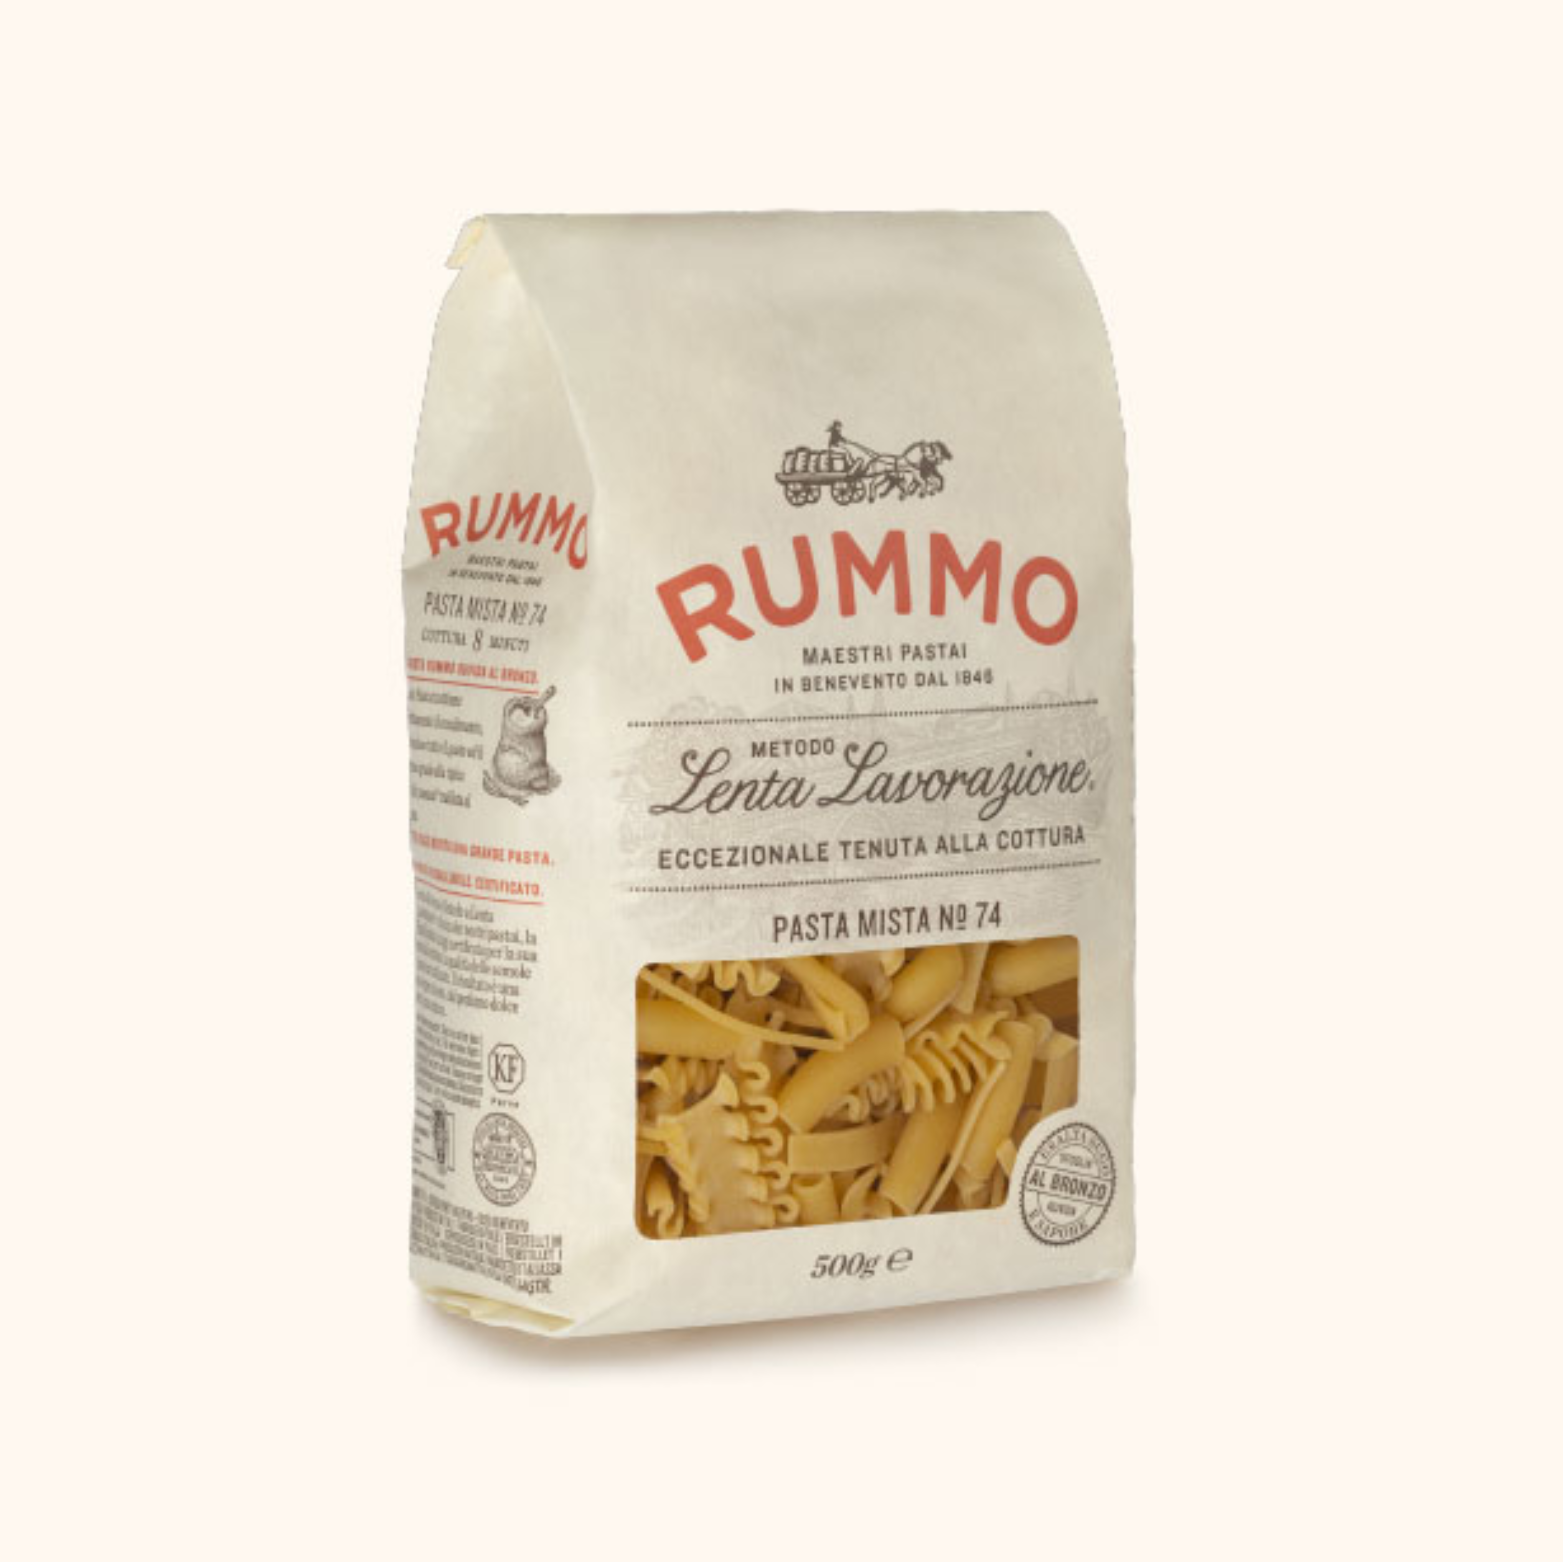 Pasta Mista aus Hartweizengrieß RUMMO, 500g